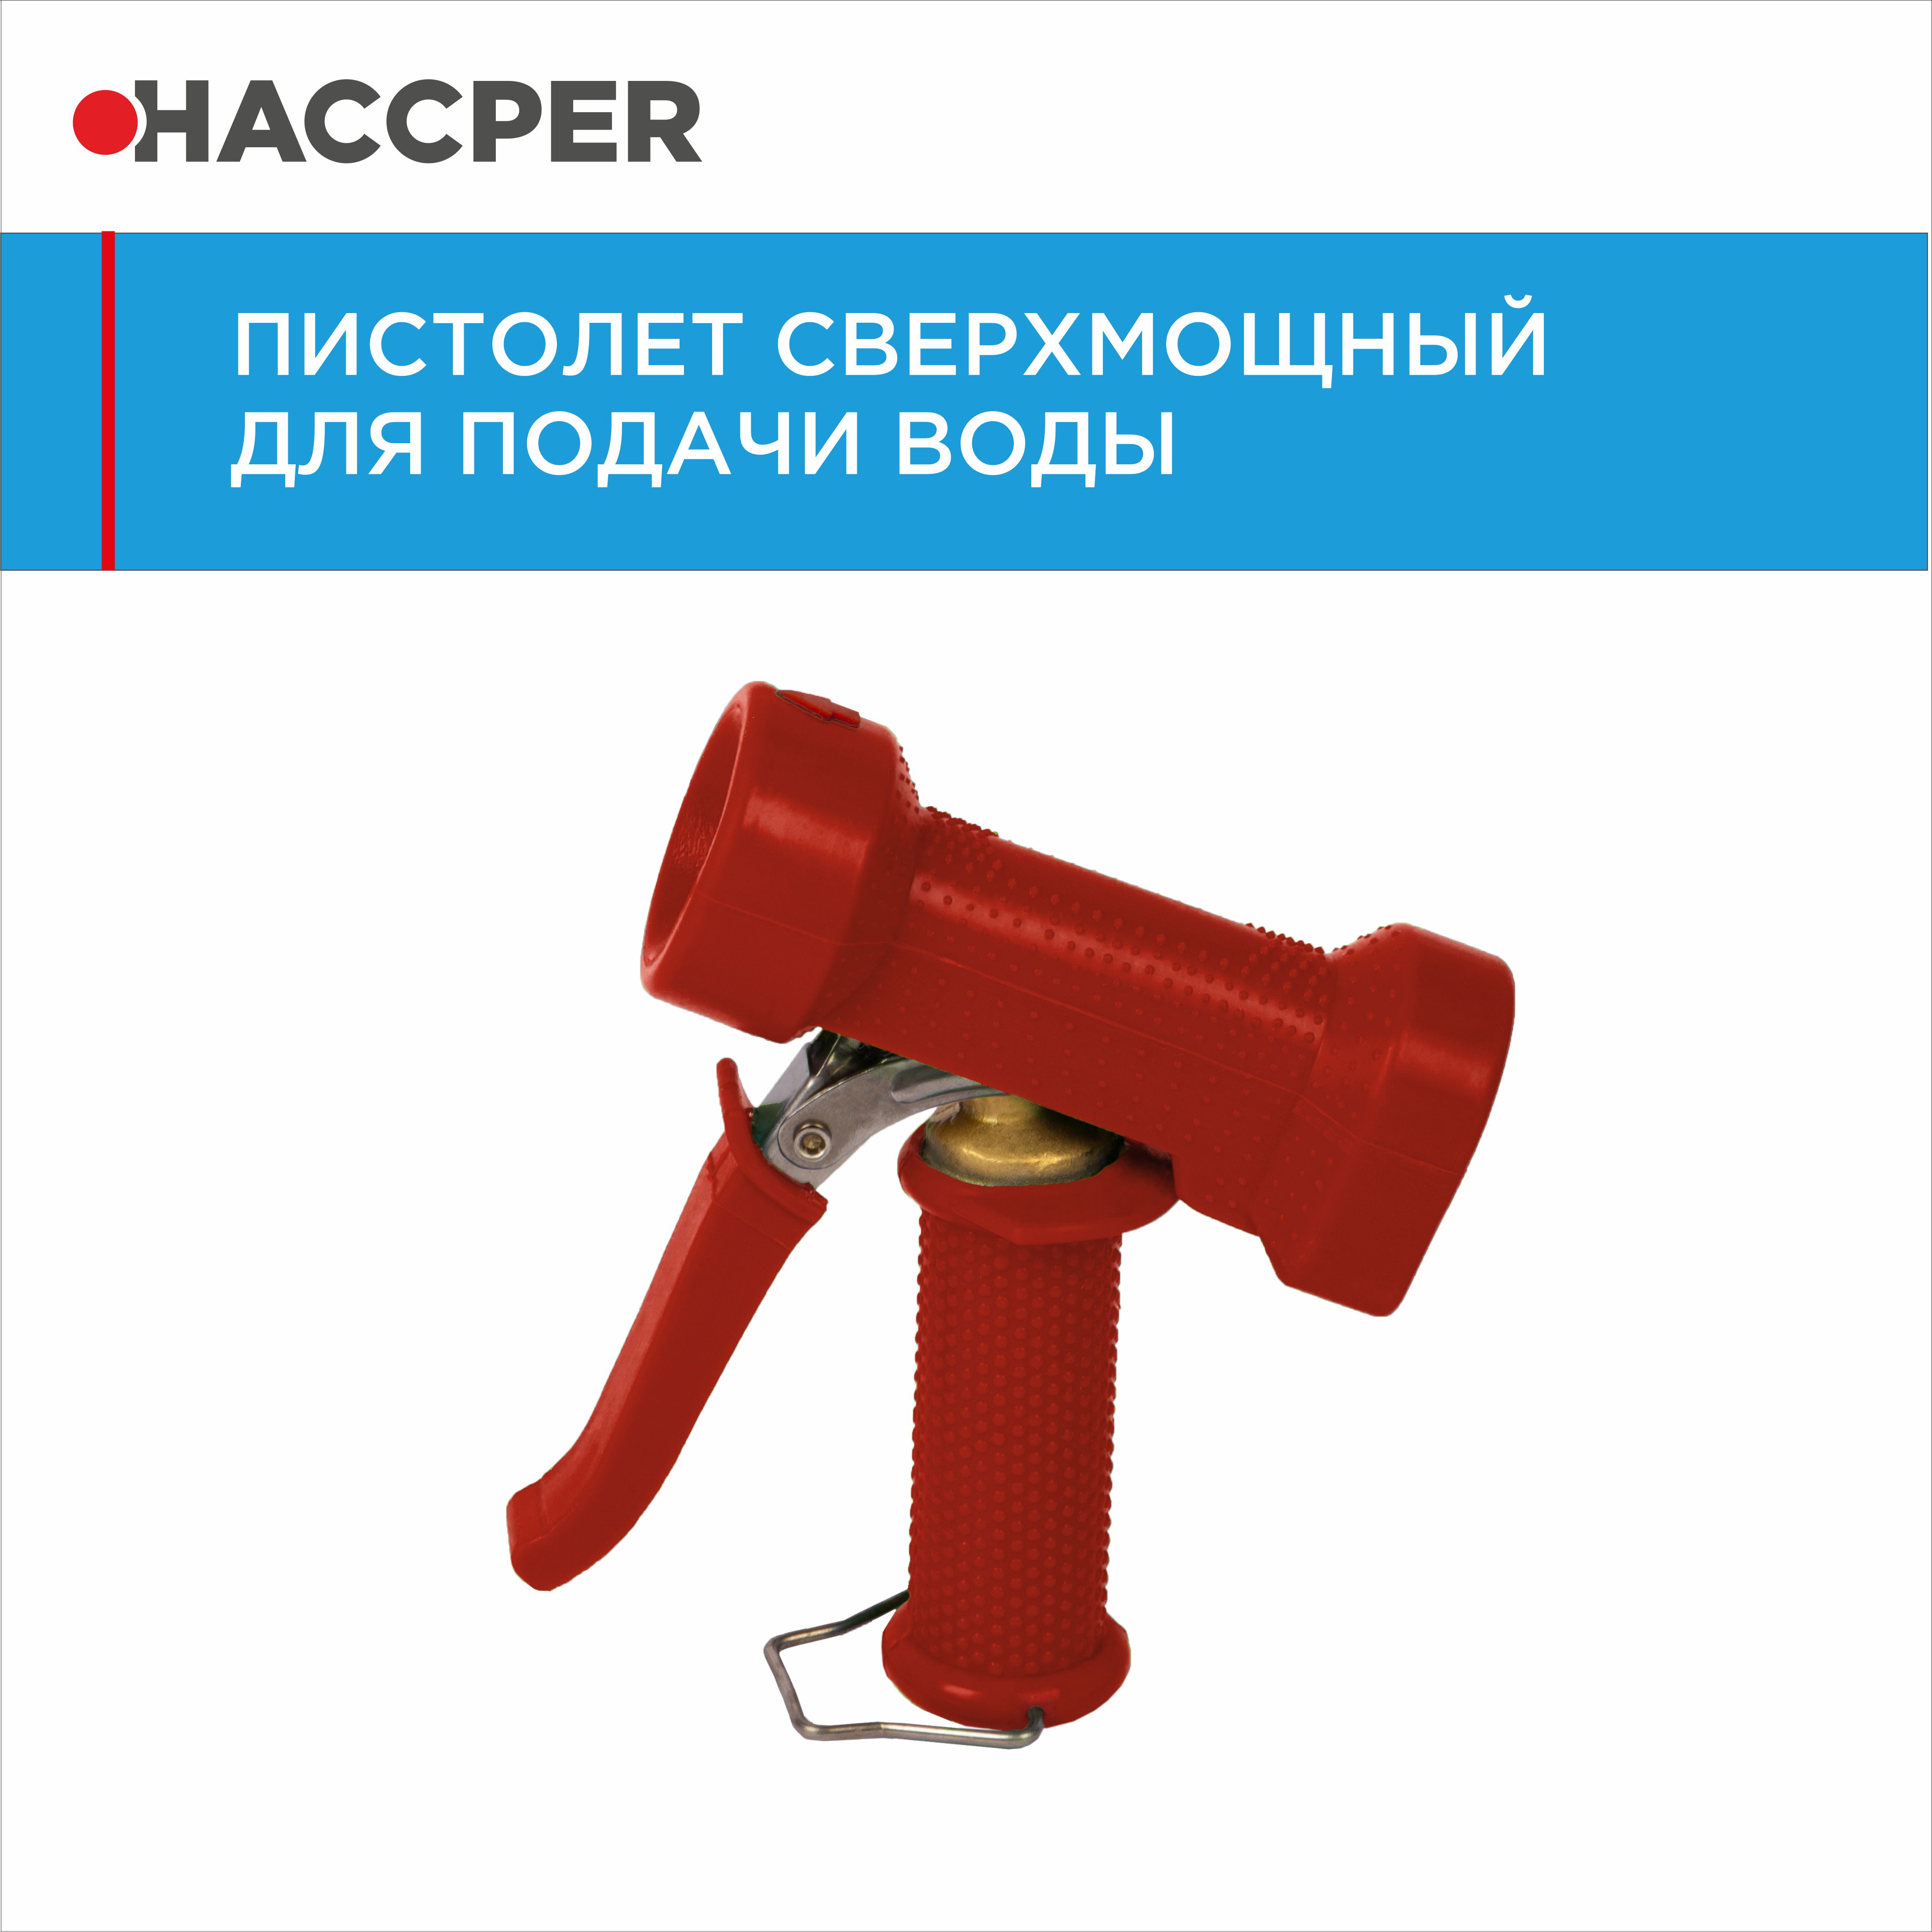 Пистолет HACCPER для подачи воды, красный